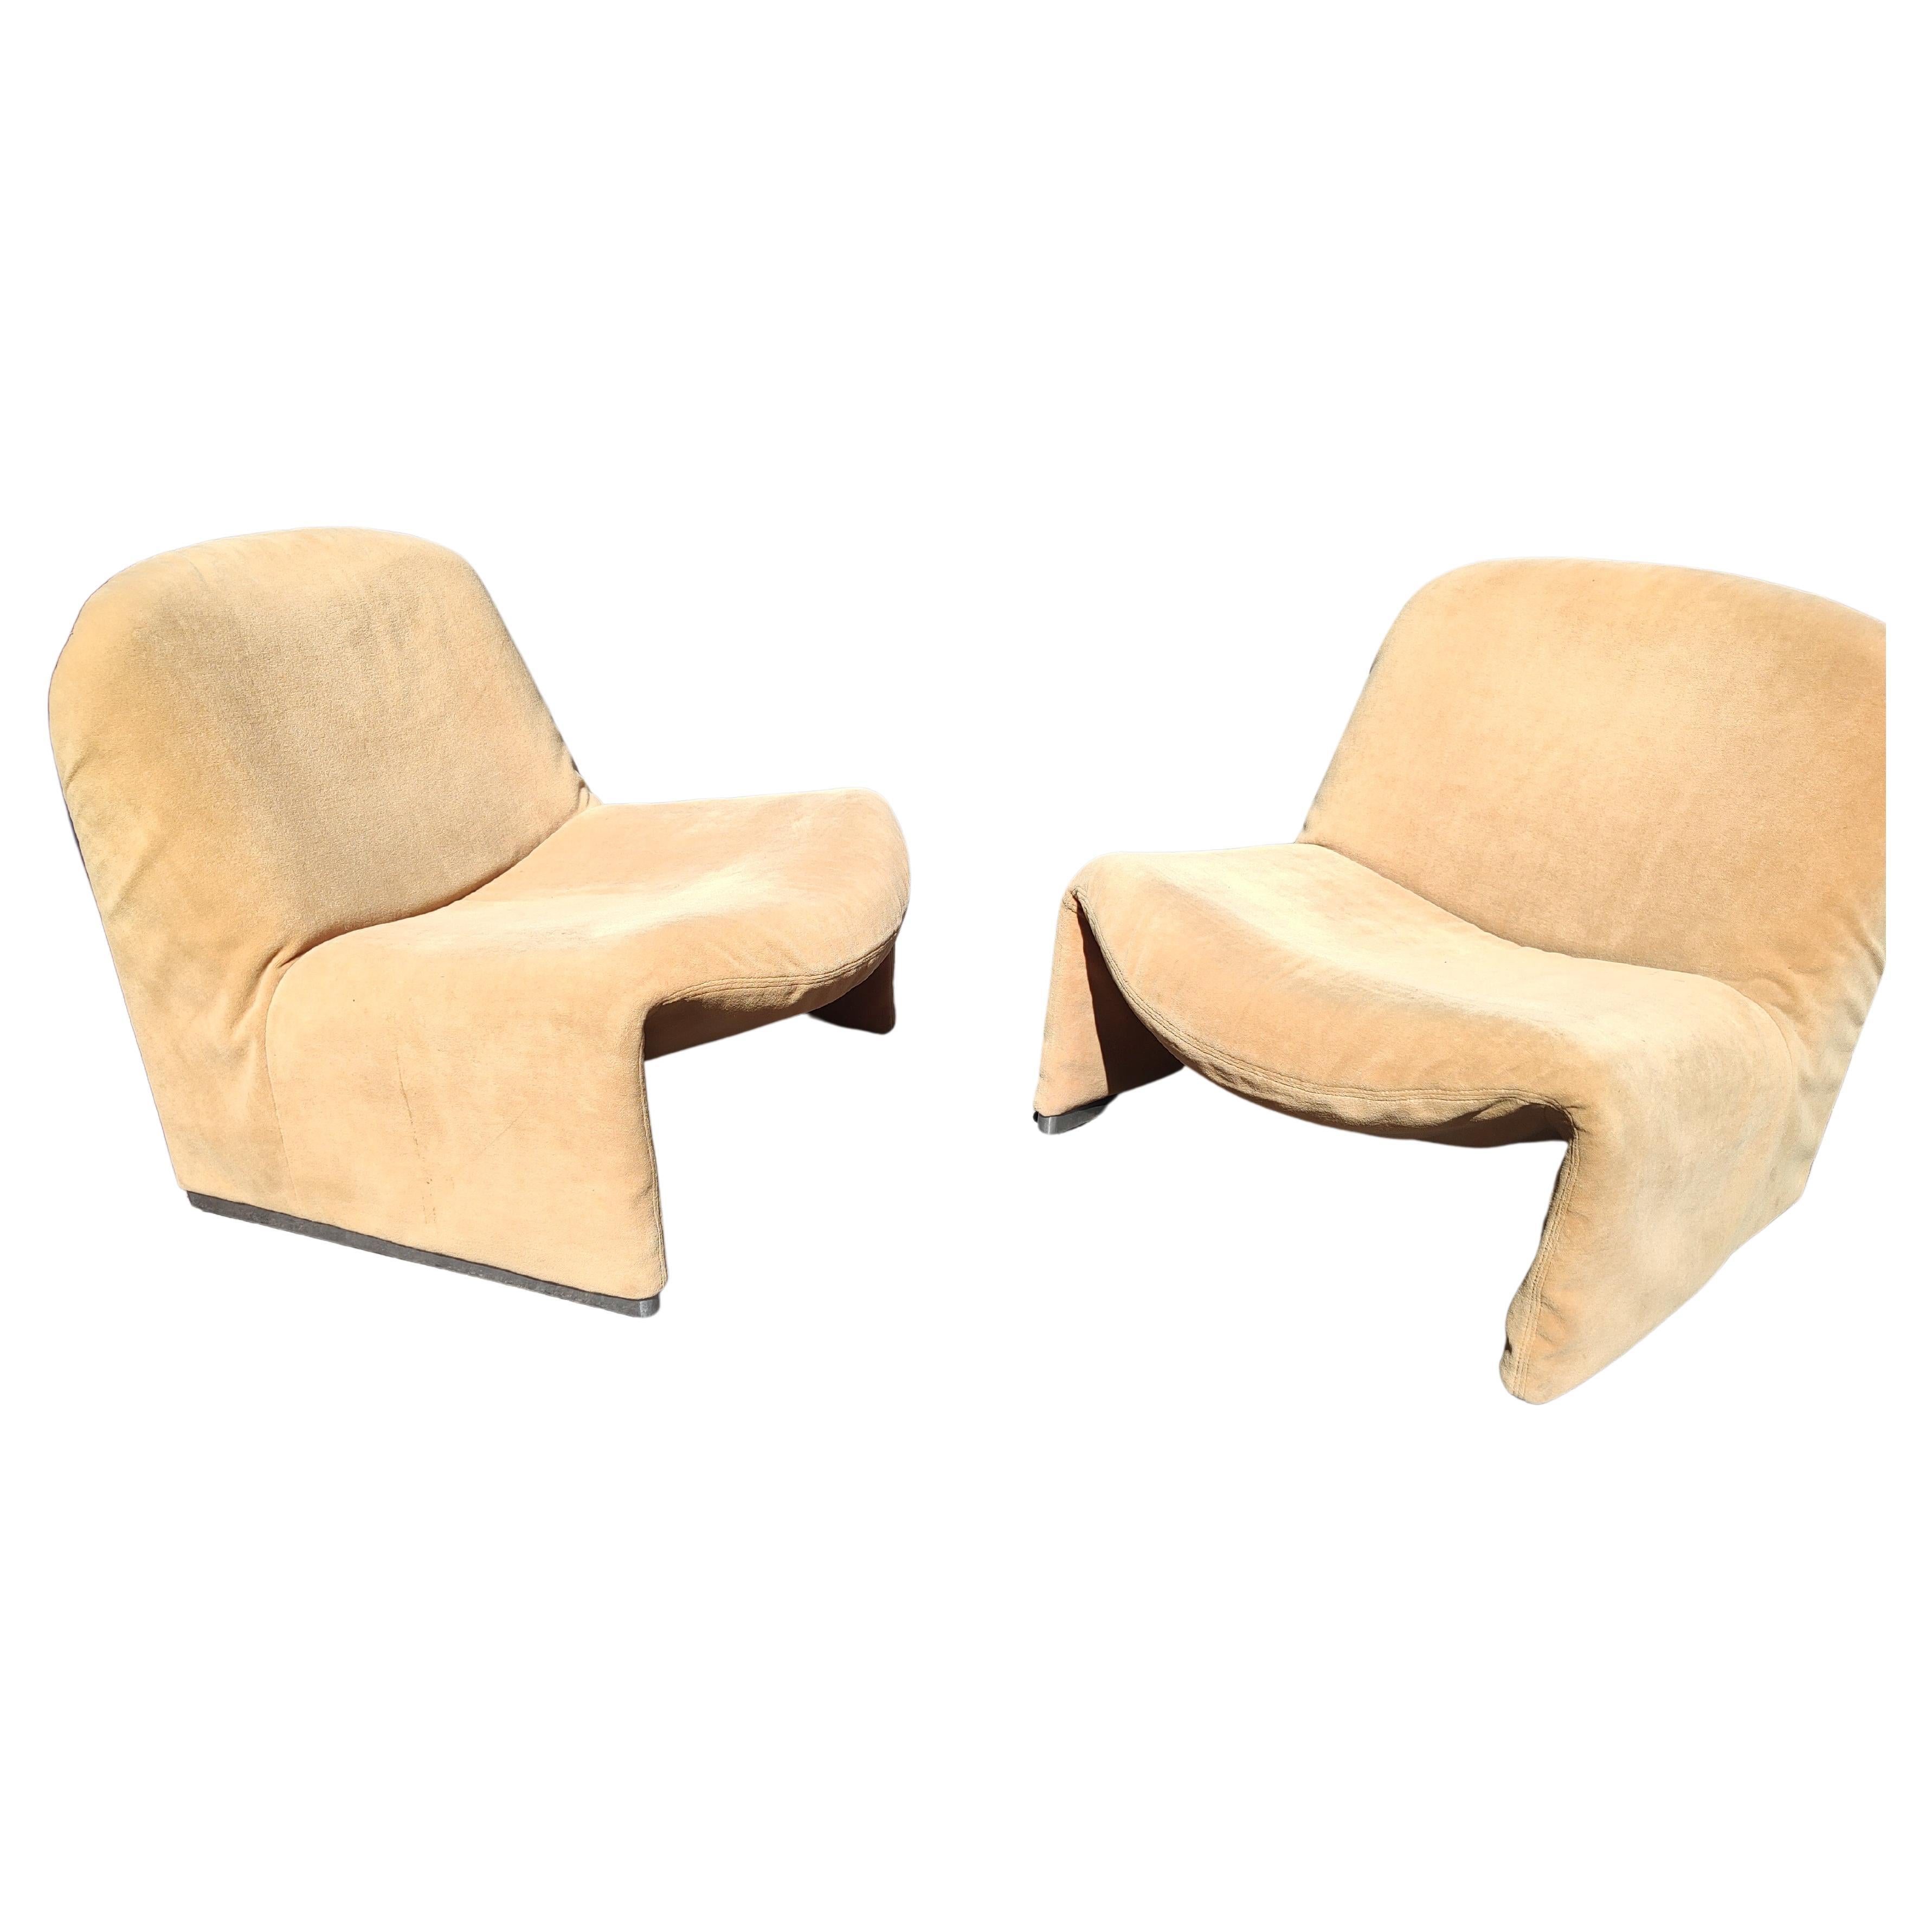 Fantastique paire de chaises Alky vintage de 1969 conçues par Giancarlo Piretti pour Artifort. Dans ce qui semble être le tissu d'origine, qui présente des signes d'usure dus à l'utilisation normale et à l'âge. Les pieds en aluminium et le padding